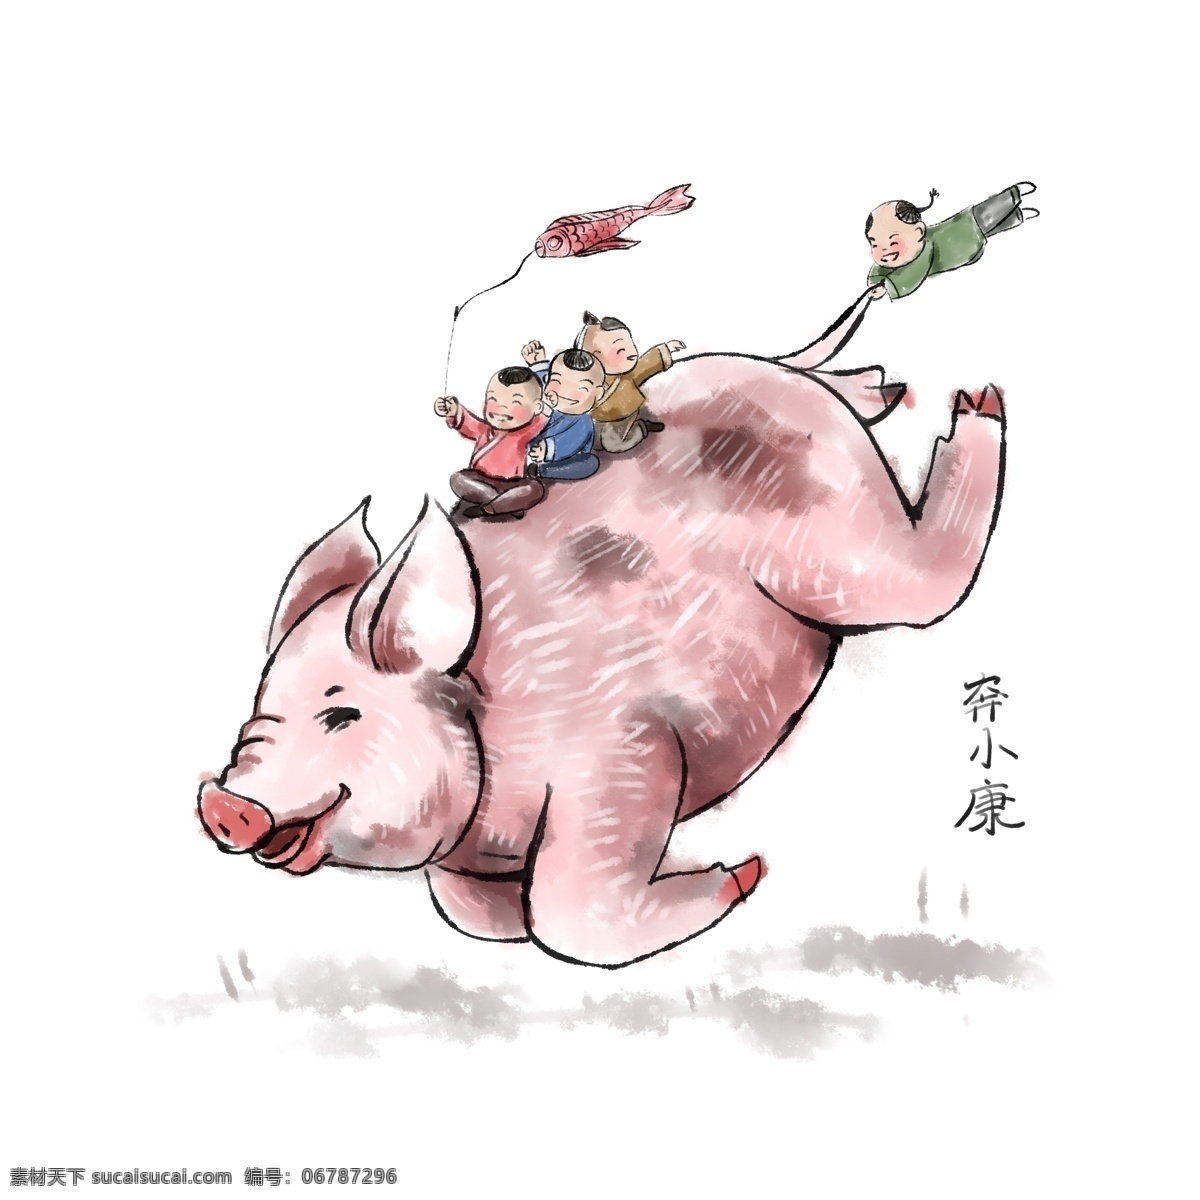 2019 春节 猪年 国画 系列 中国风 过年 猪 国画系列 金鱼旗 新年 水墨 水彩